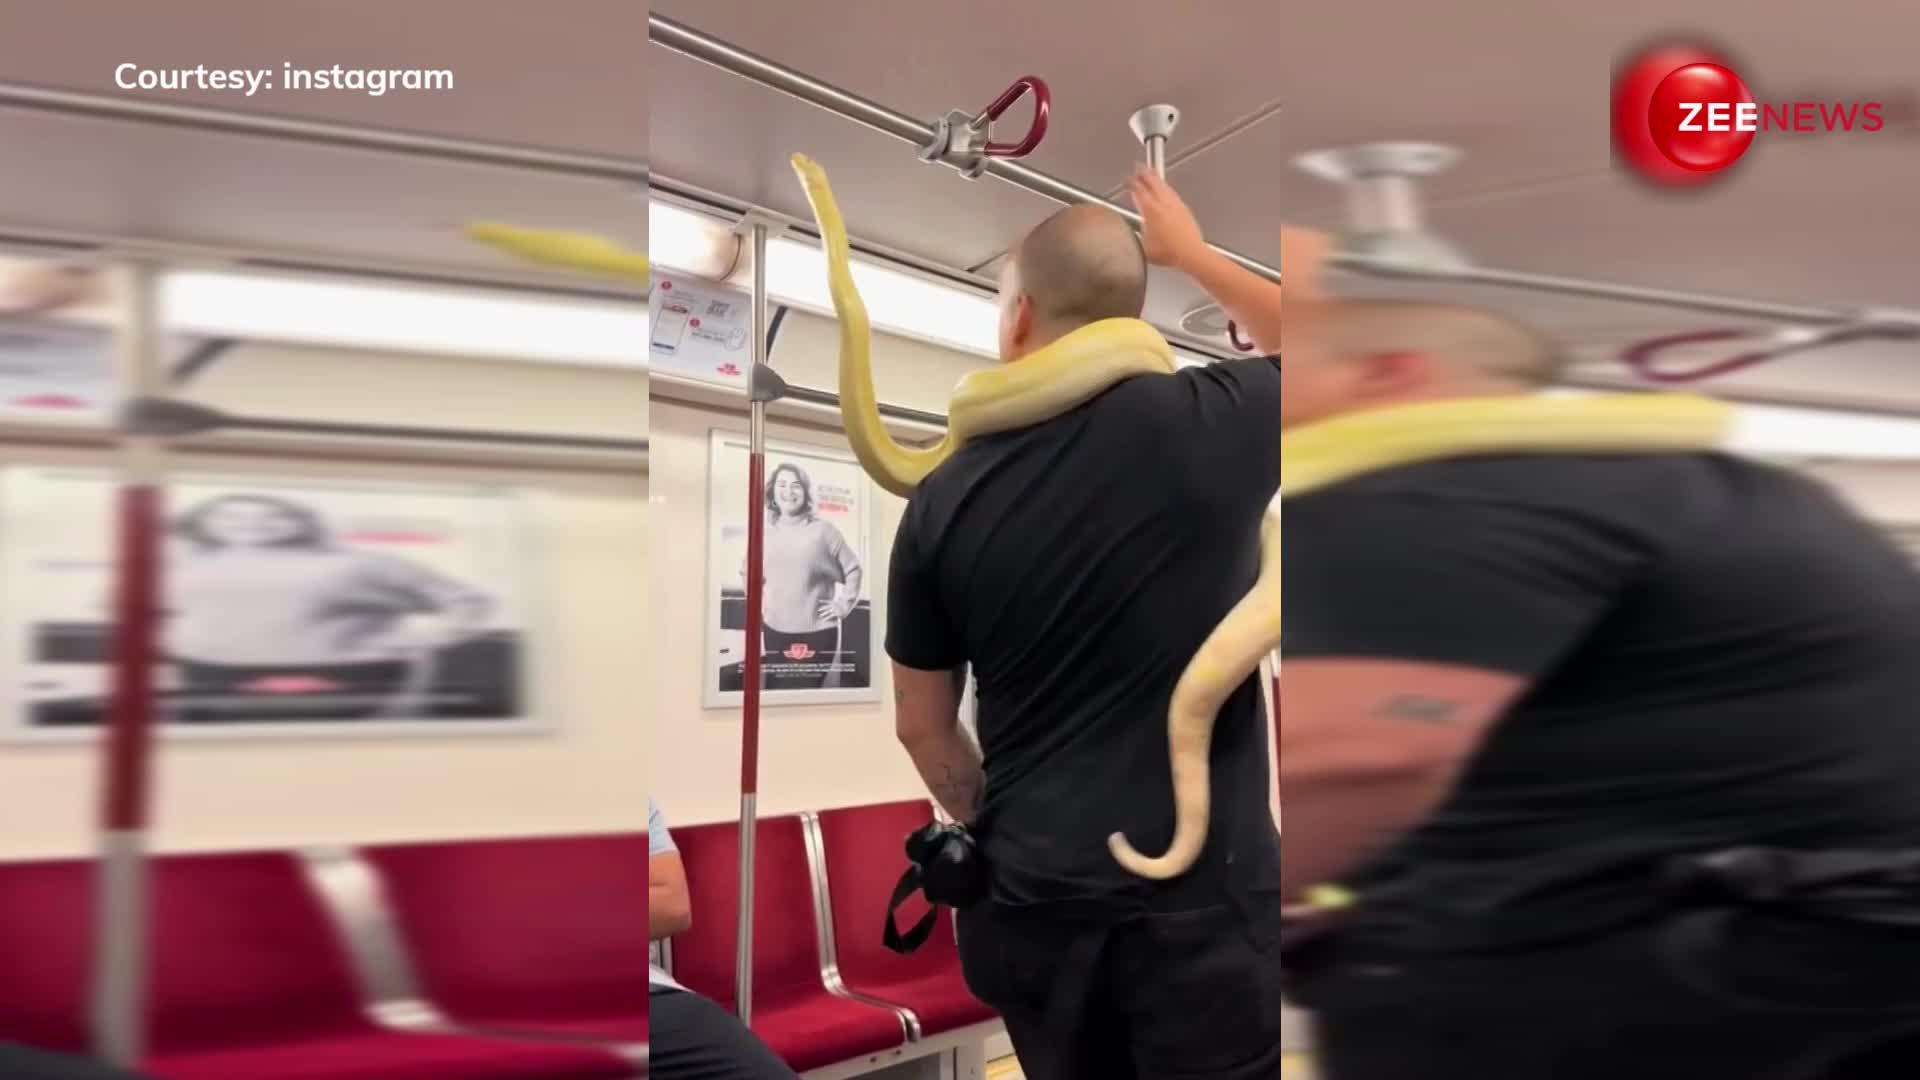 10 फुट के अजगर को लेकर मेट्रो में चढ़ गया आदमी, फिर जो हुए उसके लिए Video देखें